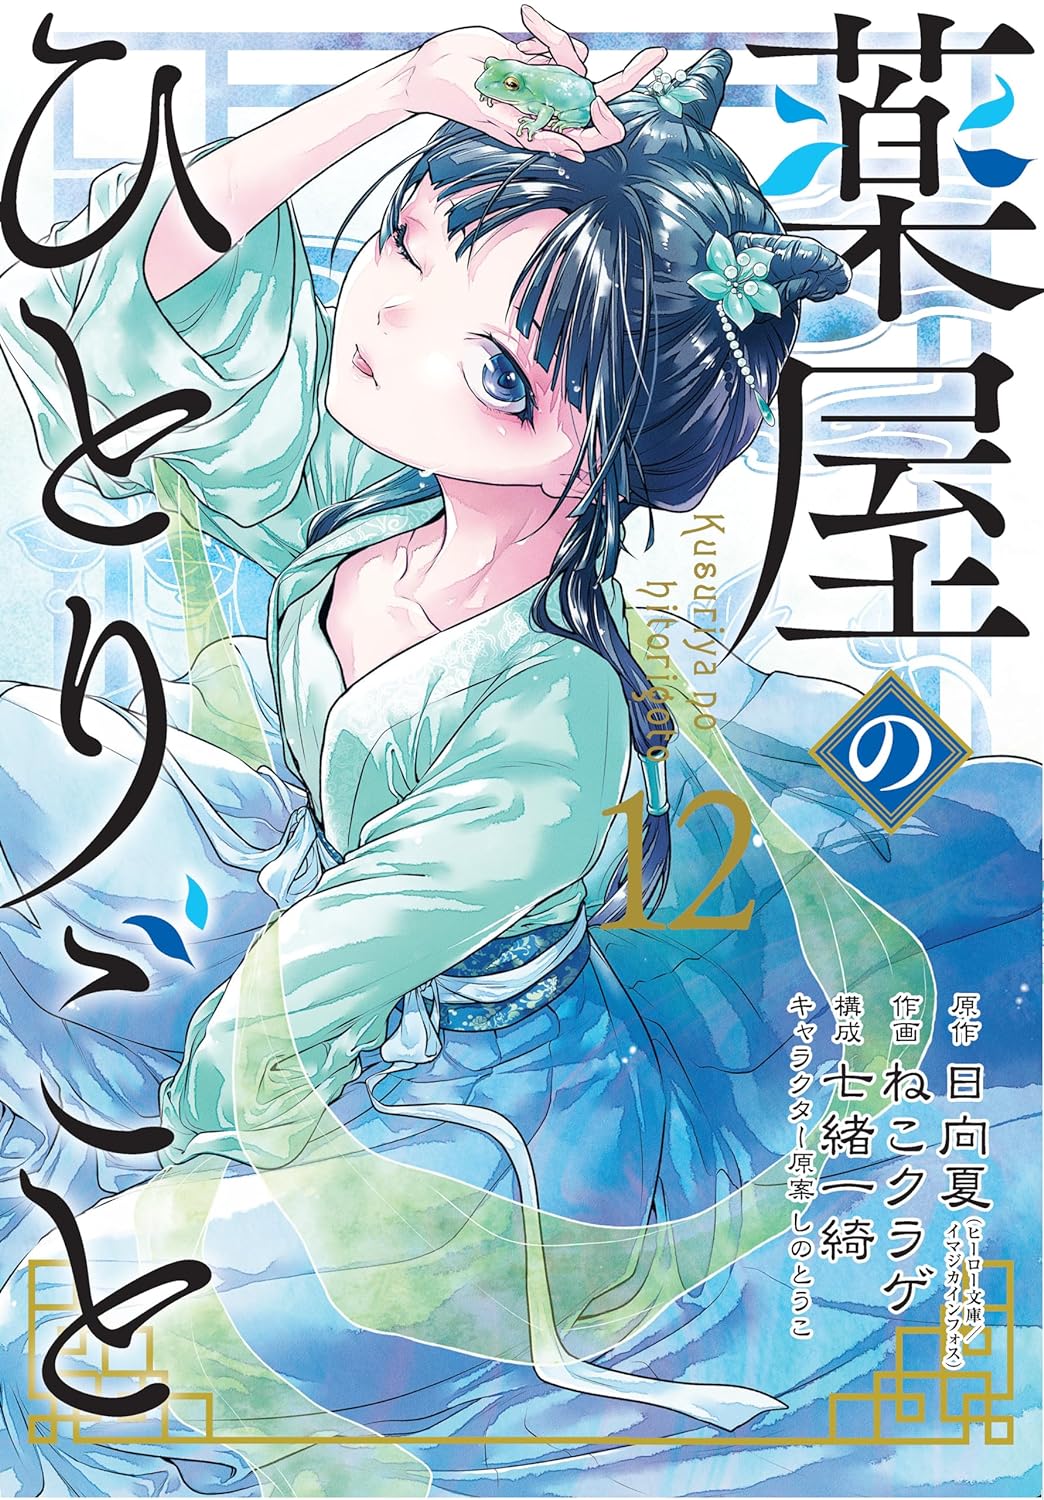 The Apothecary Diaries Volume 12 (Manga)